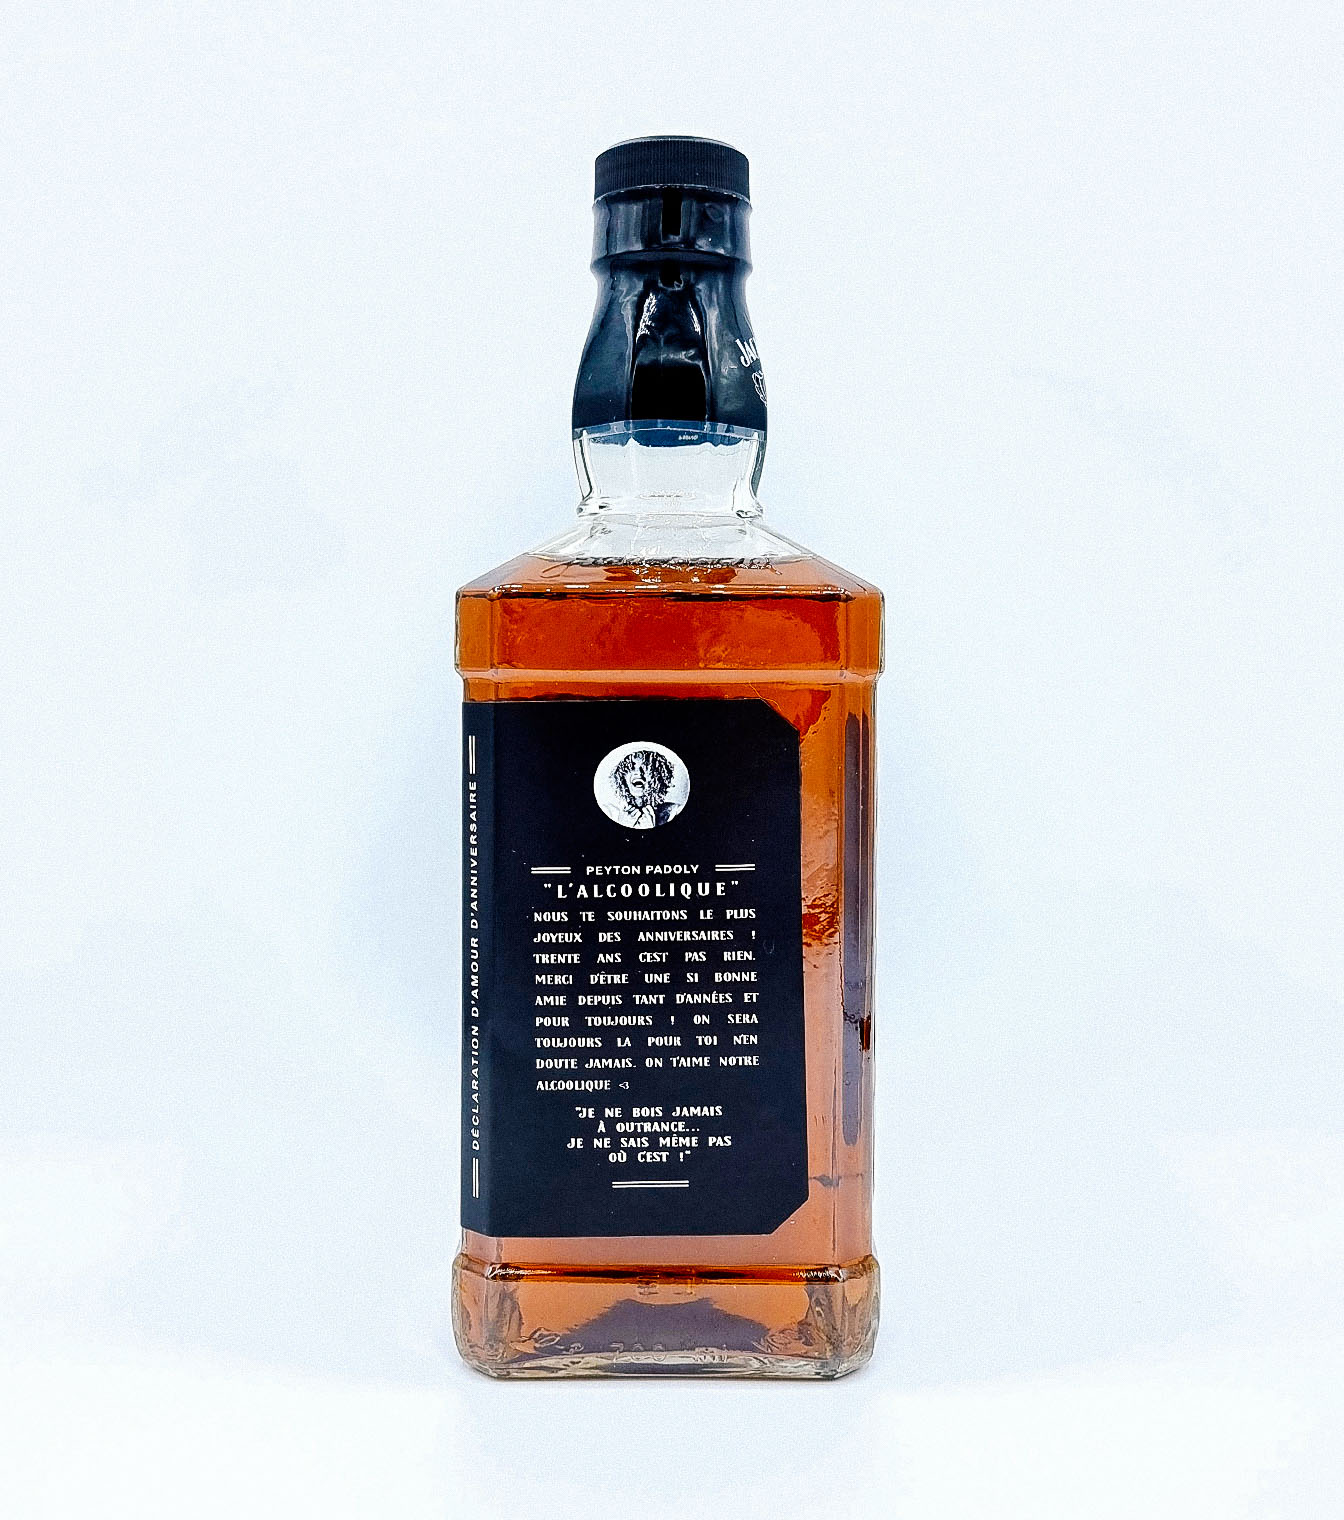 Personnalisation d'étiquette pour bouteille de Jack Daniel's